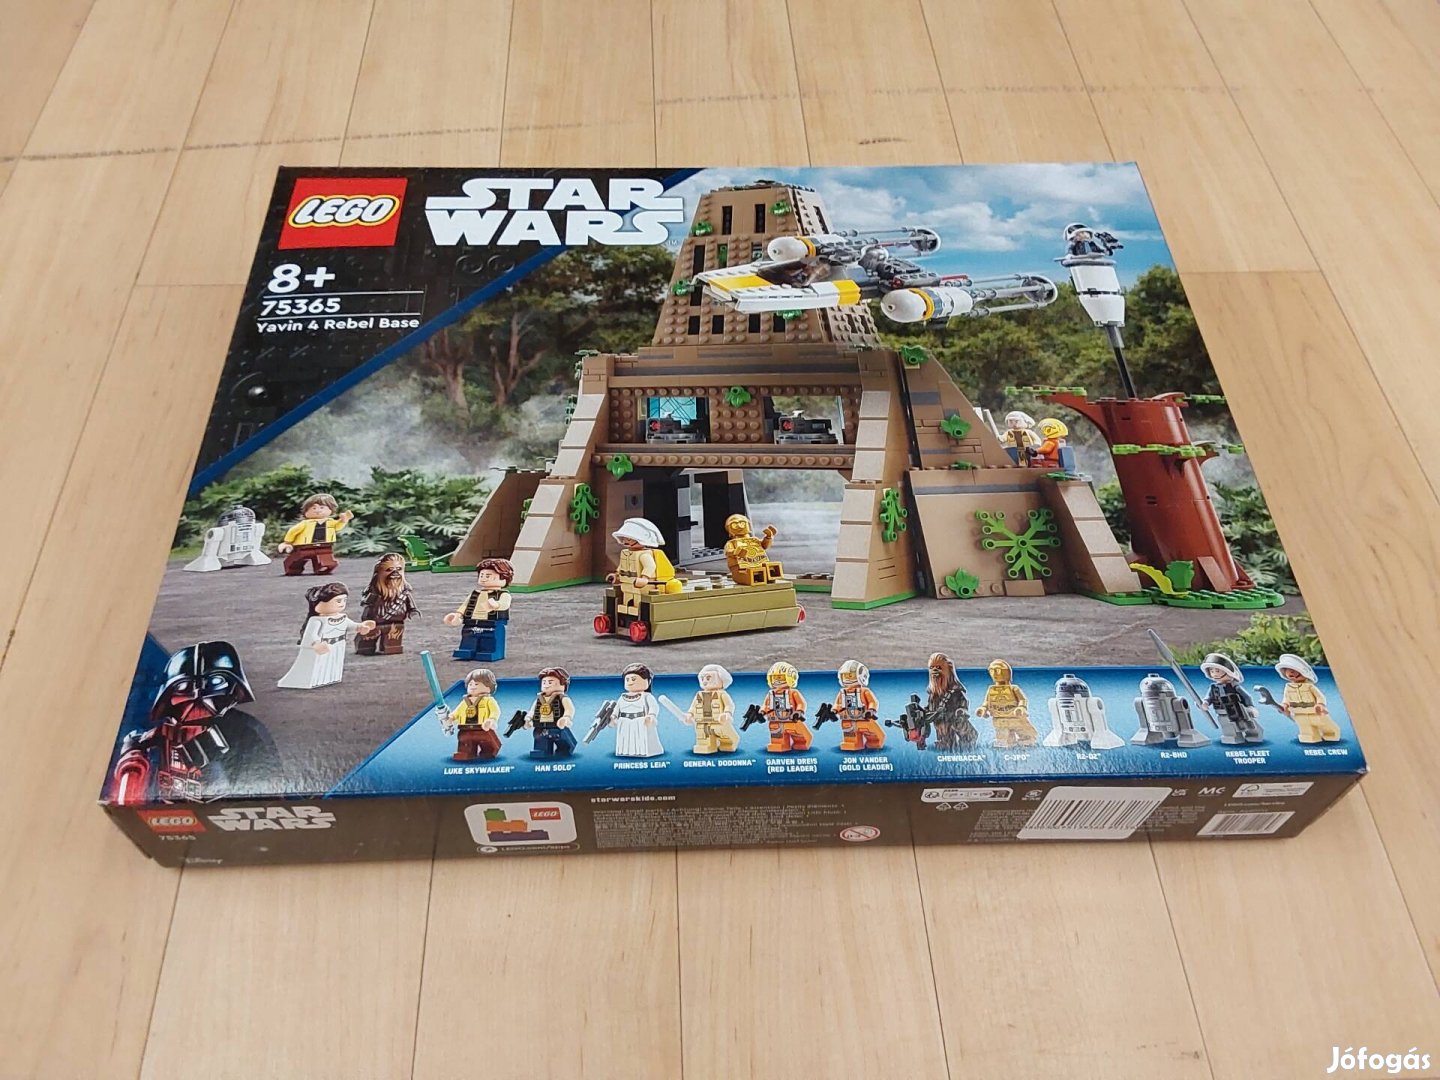 Lego 75365 Star Wars